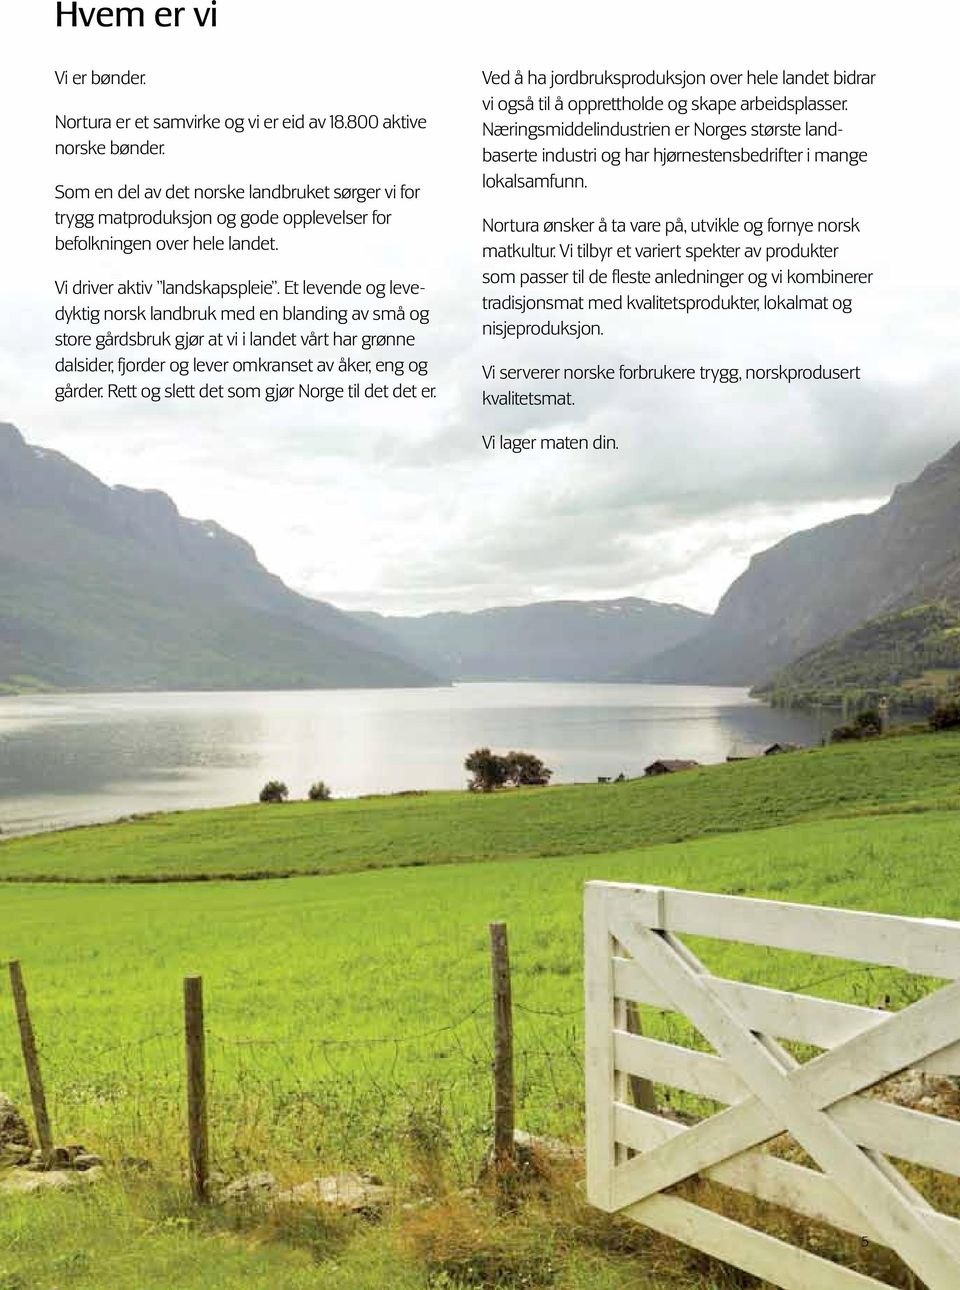 Et levende og levedyktig norsk landbruk med en blanding av små og store gårdsbruk gjør at vi i landet vårt har grønne dalsider, fjorder og lever omkranset av åker, eng og gårder.